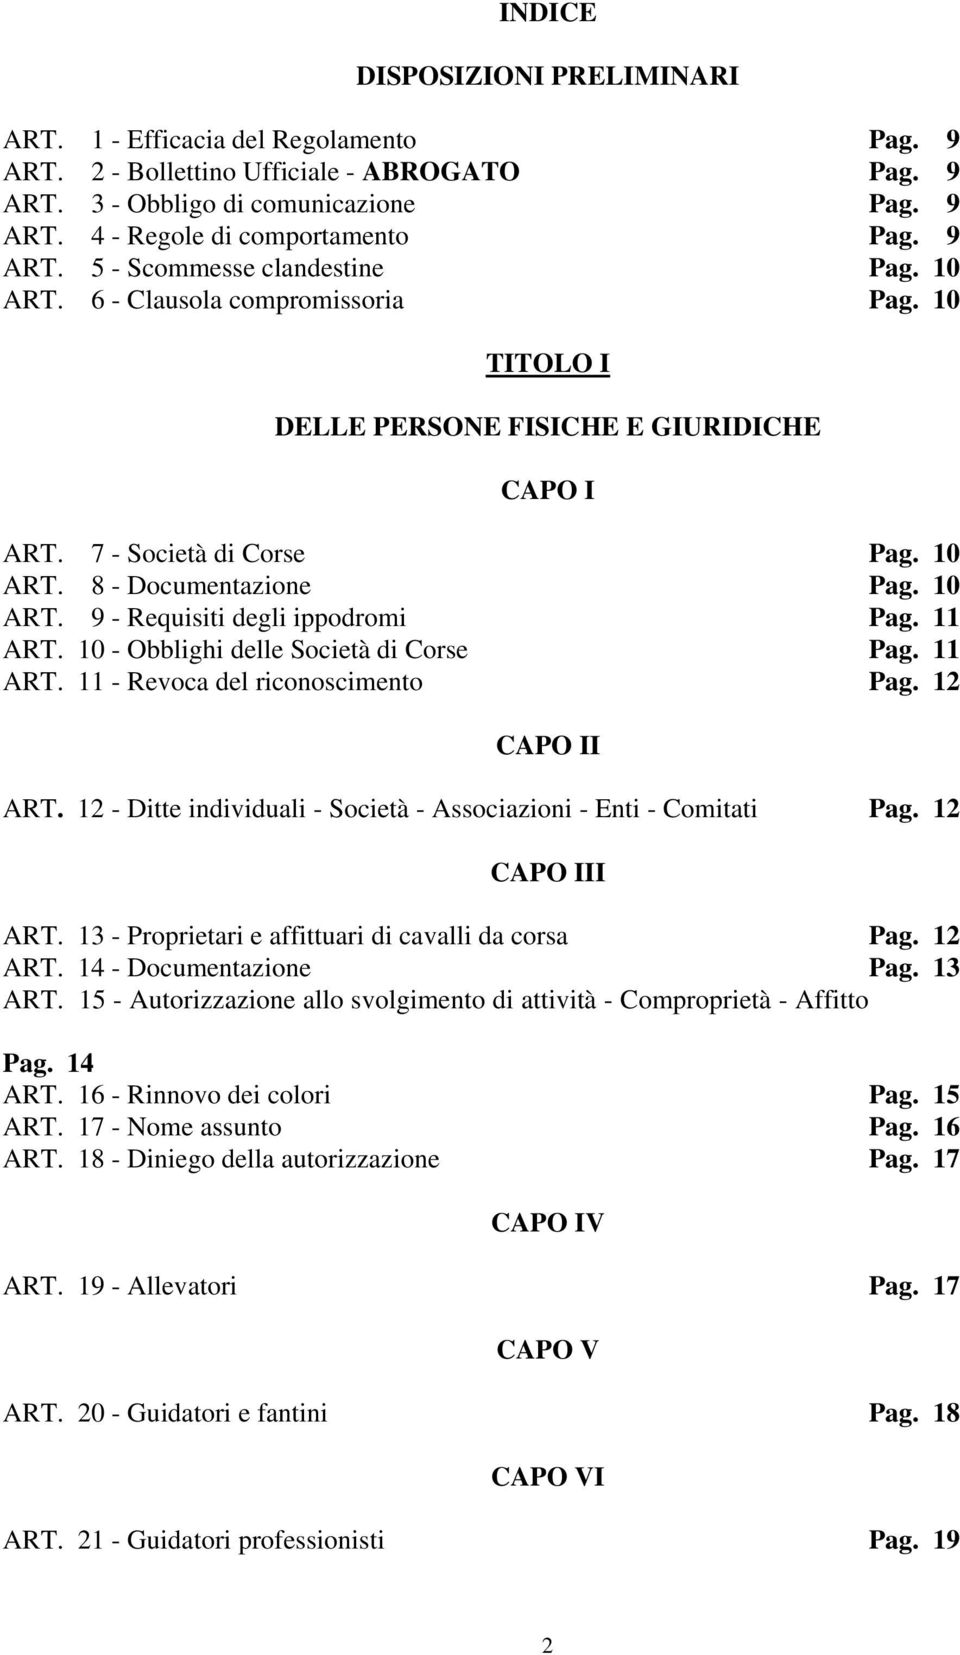 10 ART. 9 - Requisiti degli ippodromi Pag. 11 ART. 10 - Obblighi delle Società di Corse Pag. 11 ART. 11 - Revoca del riconoscimento Pag. 12 CAPO II ART.